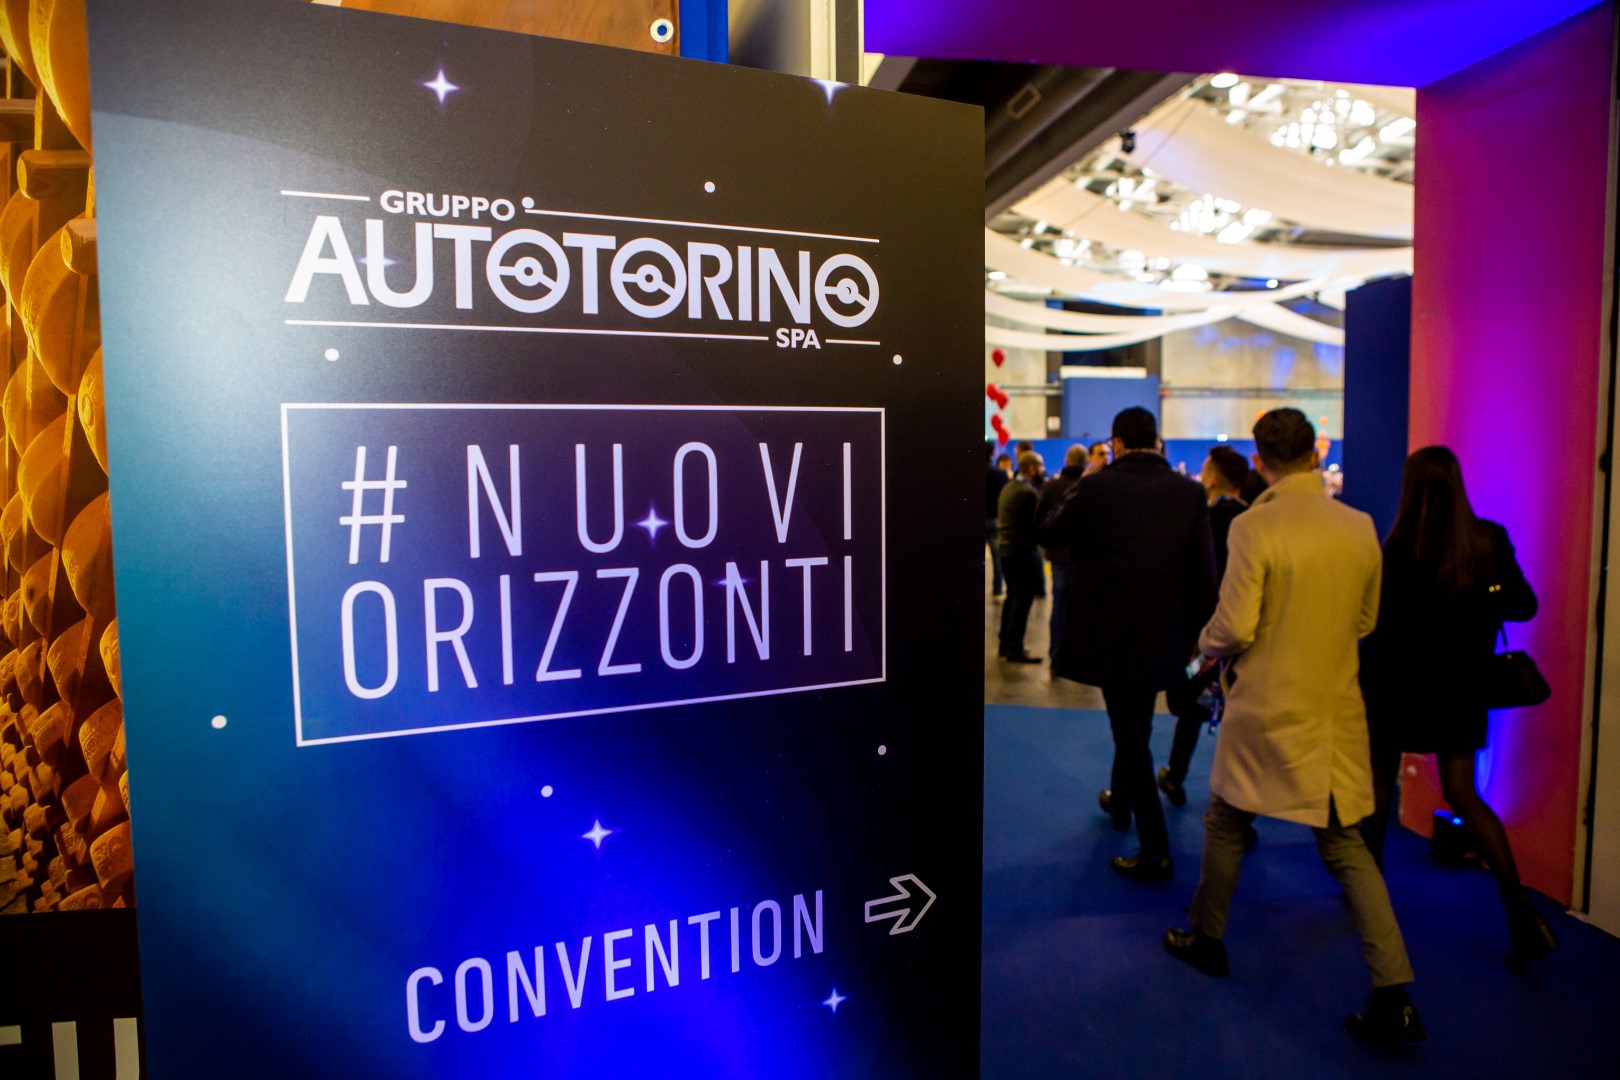 La convention Autotorino 2018 guarda a Nuovi Orizzonti